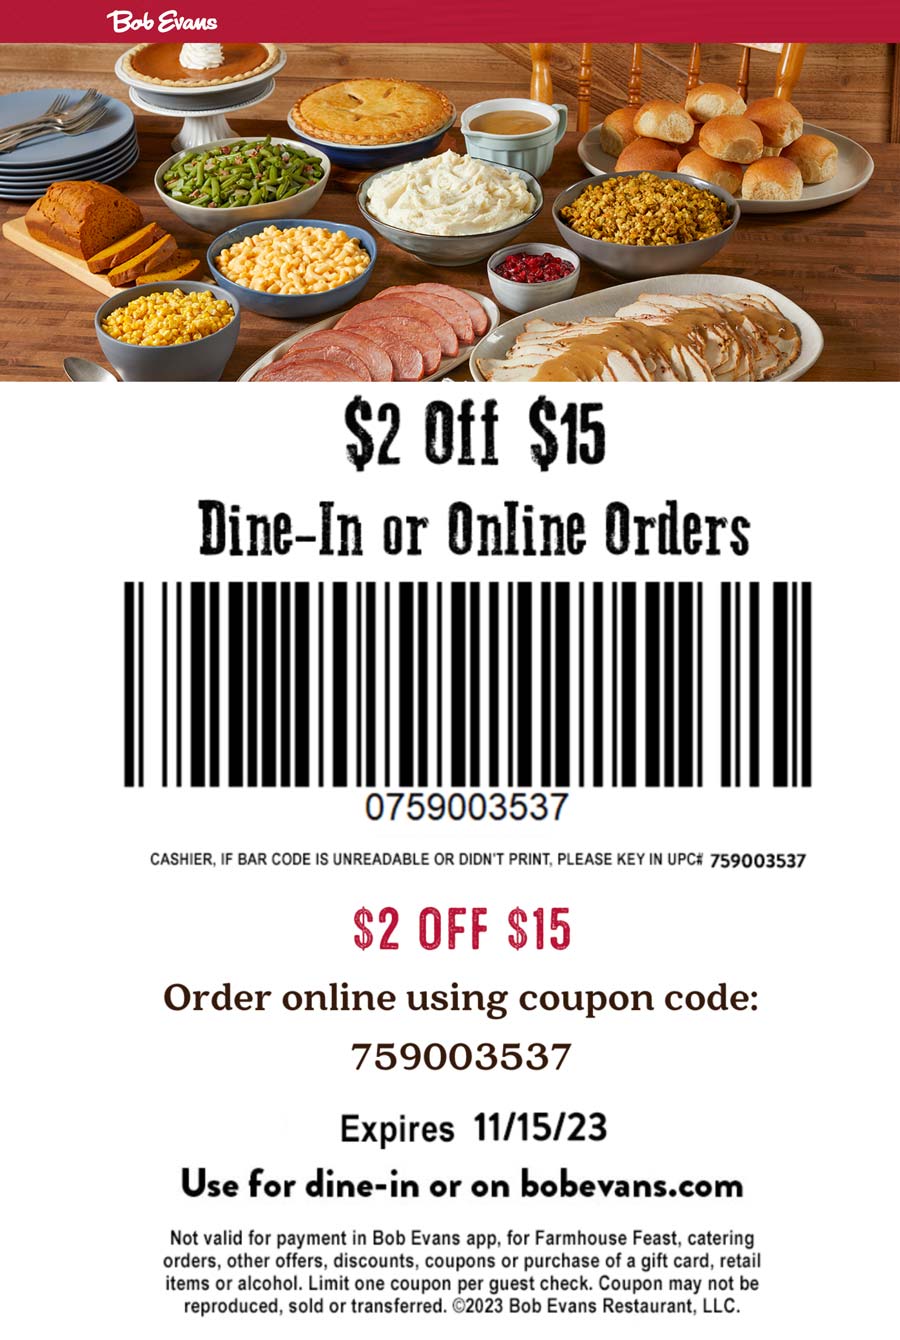 $2 off $15 at Bob Evans restaurants, or online via promo code 759003537 #bobevans